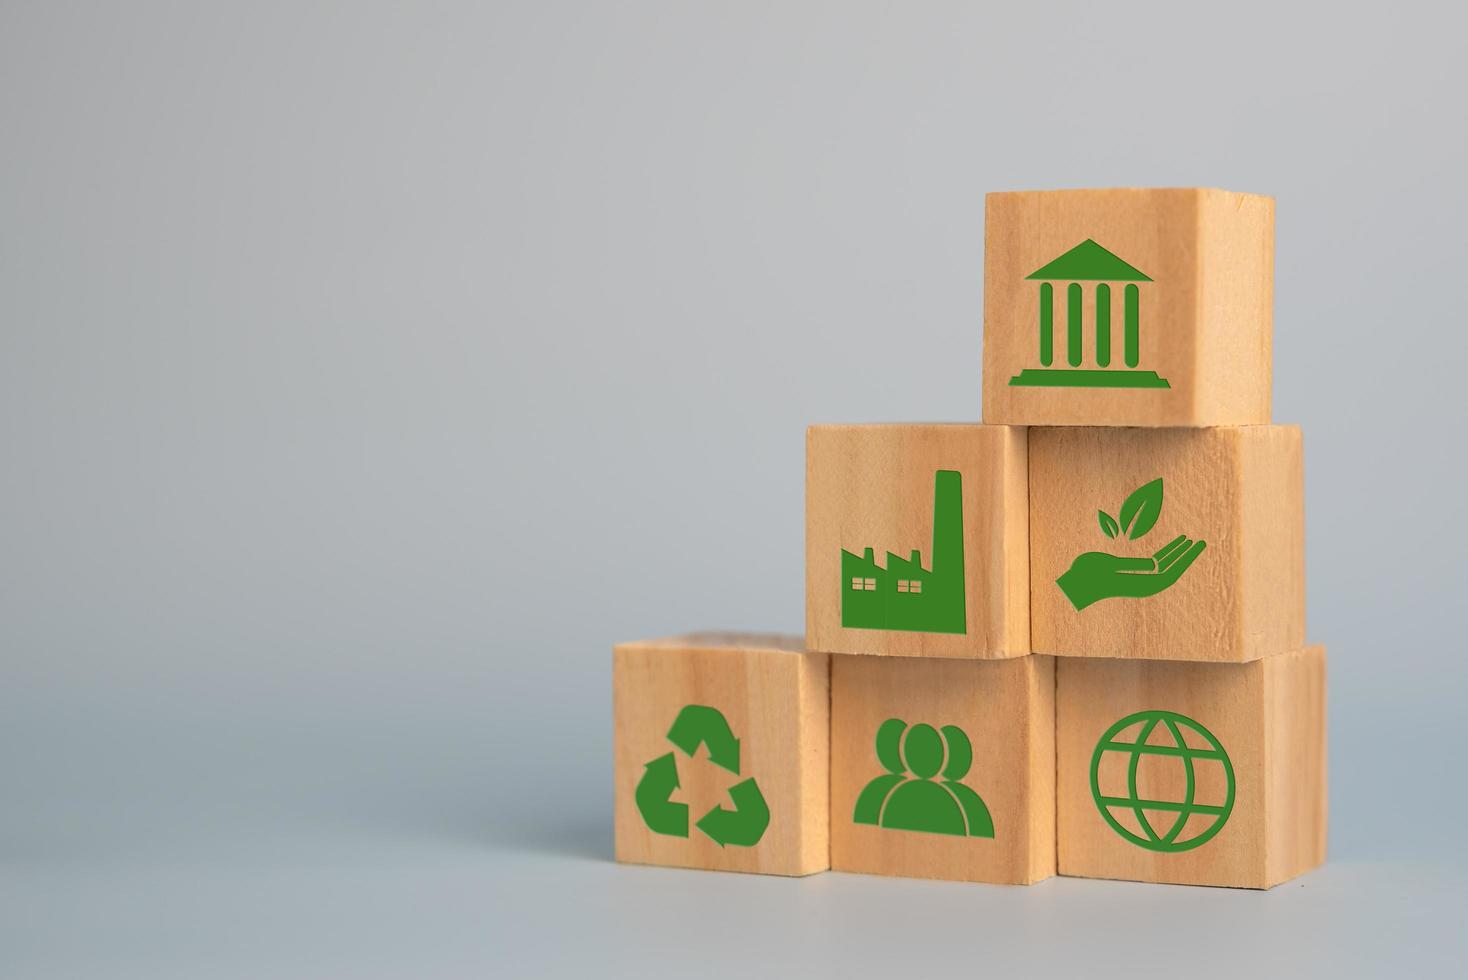 hout kubus blok esg milieu sociaal en bestuur eco concept van duurzame ontwikkeling van de organisatie.investeren en beheer van verontreiniging naar verminderen globaal opwarming. foto